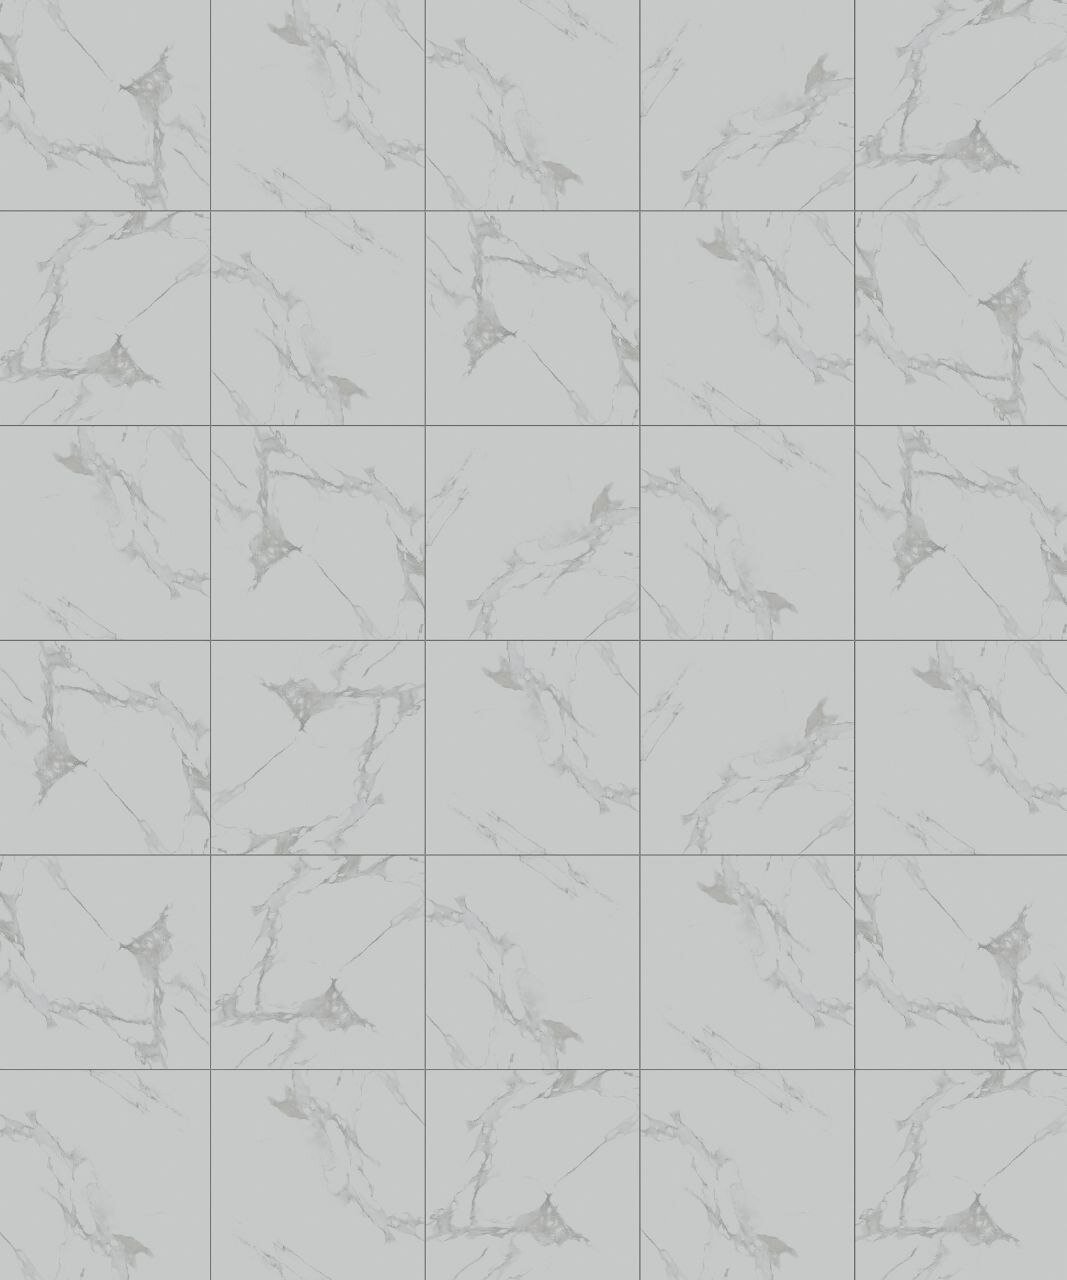 Плитка "идеал" Quarzo 60х60 см, цвет: белый, серый; эффект мрамор, гладкая поверхность